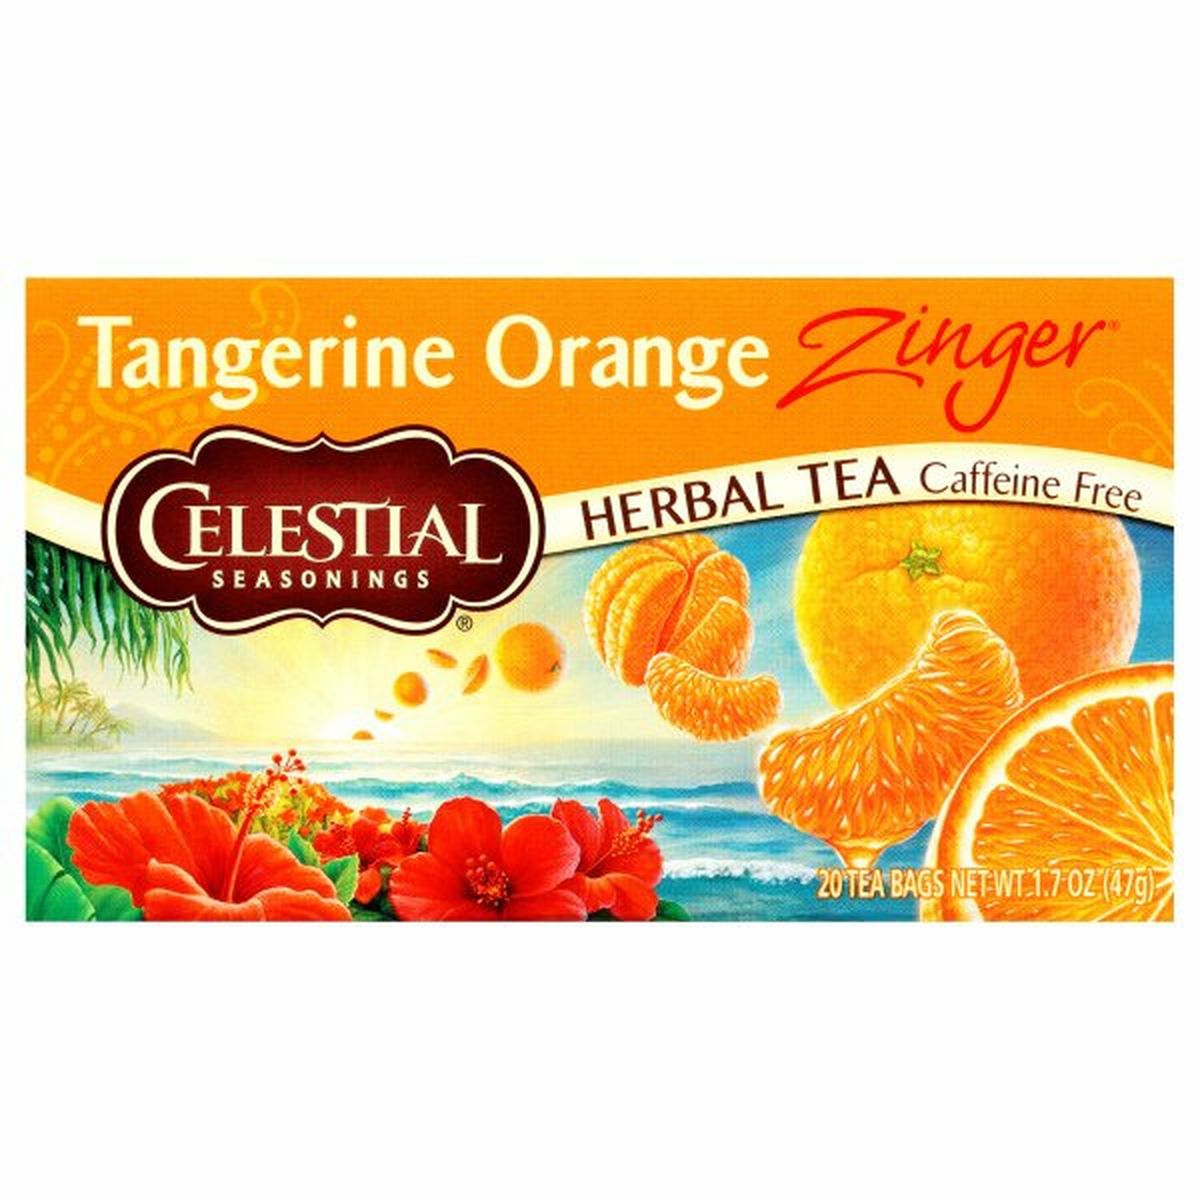 Calories in Celestial Seasonings Herbal Tea, Caffeine Free, Tangerine Orange Zinger, Tea Bags